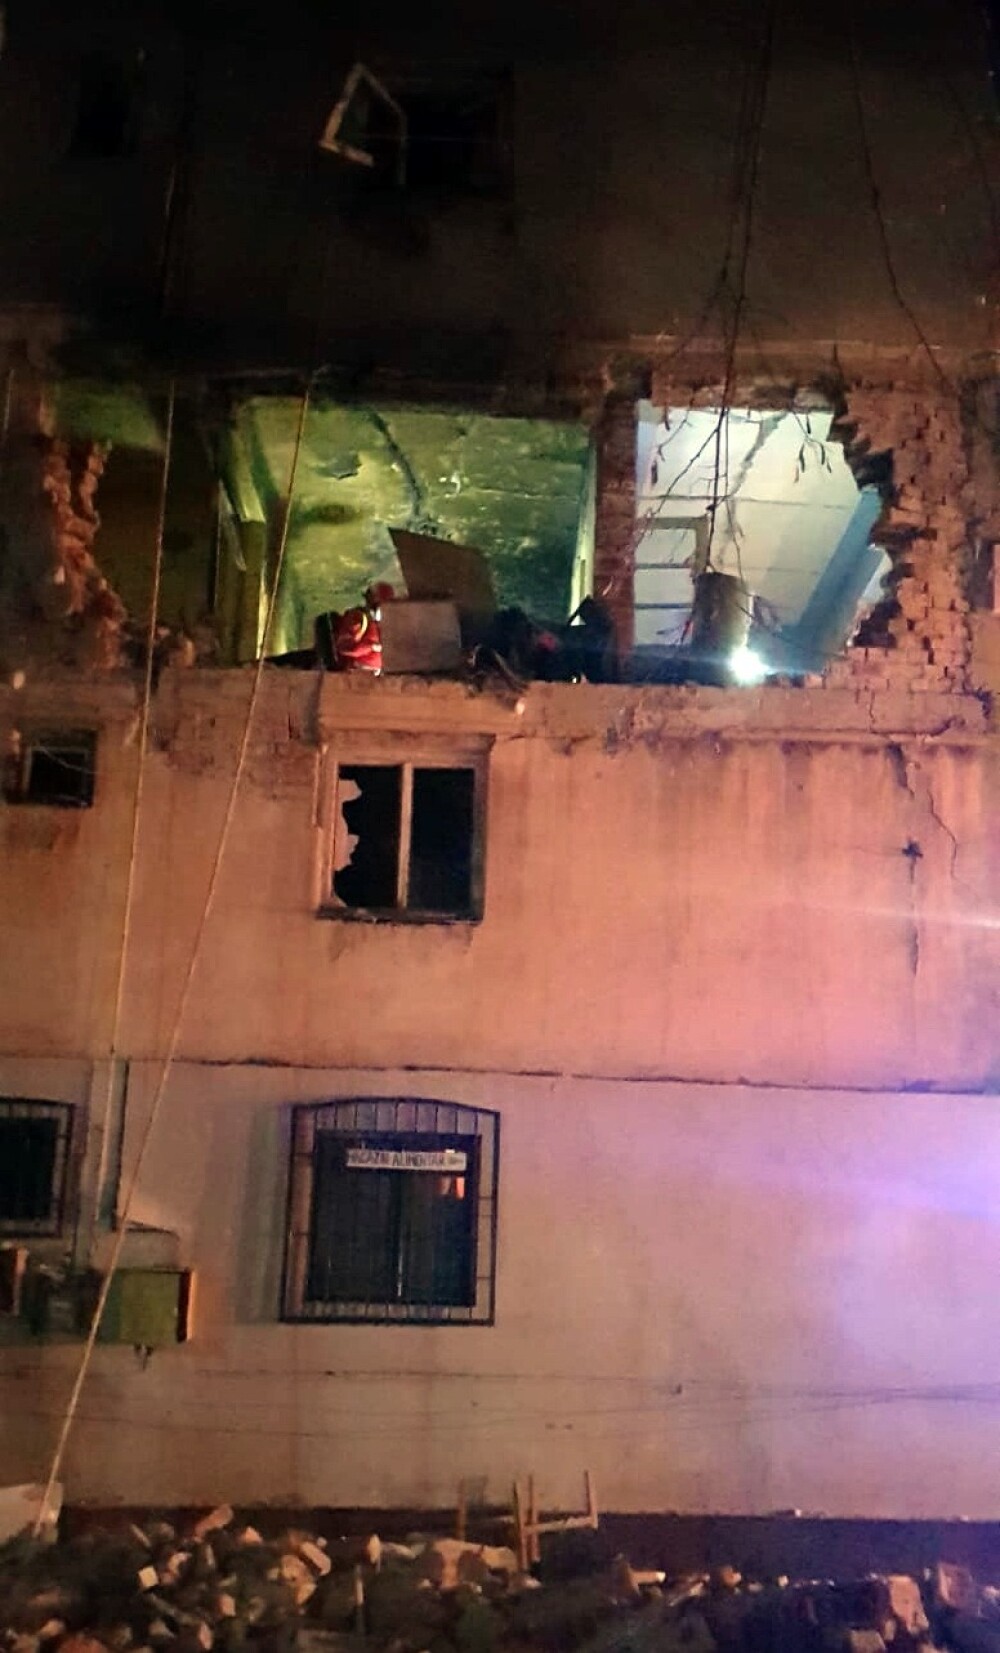 Explozie urmată de incendiu într-un bloc din Găeşti. Ar fi pornit de la o scurgere de gaze - Imaginea 2